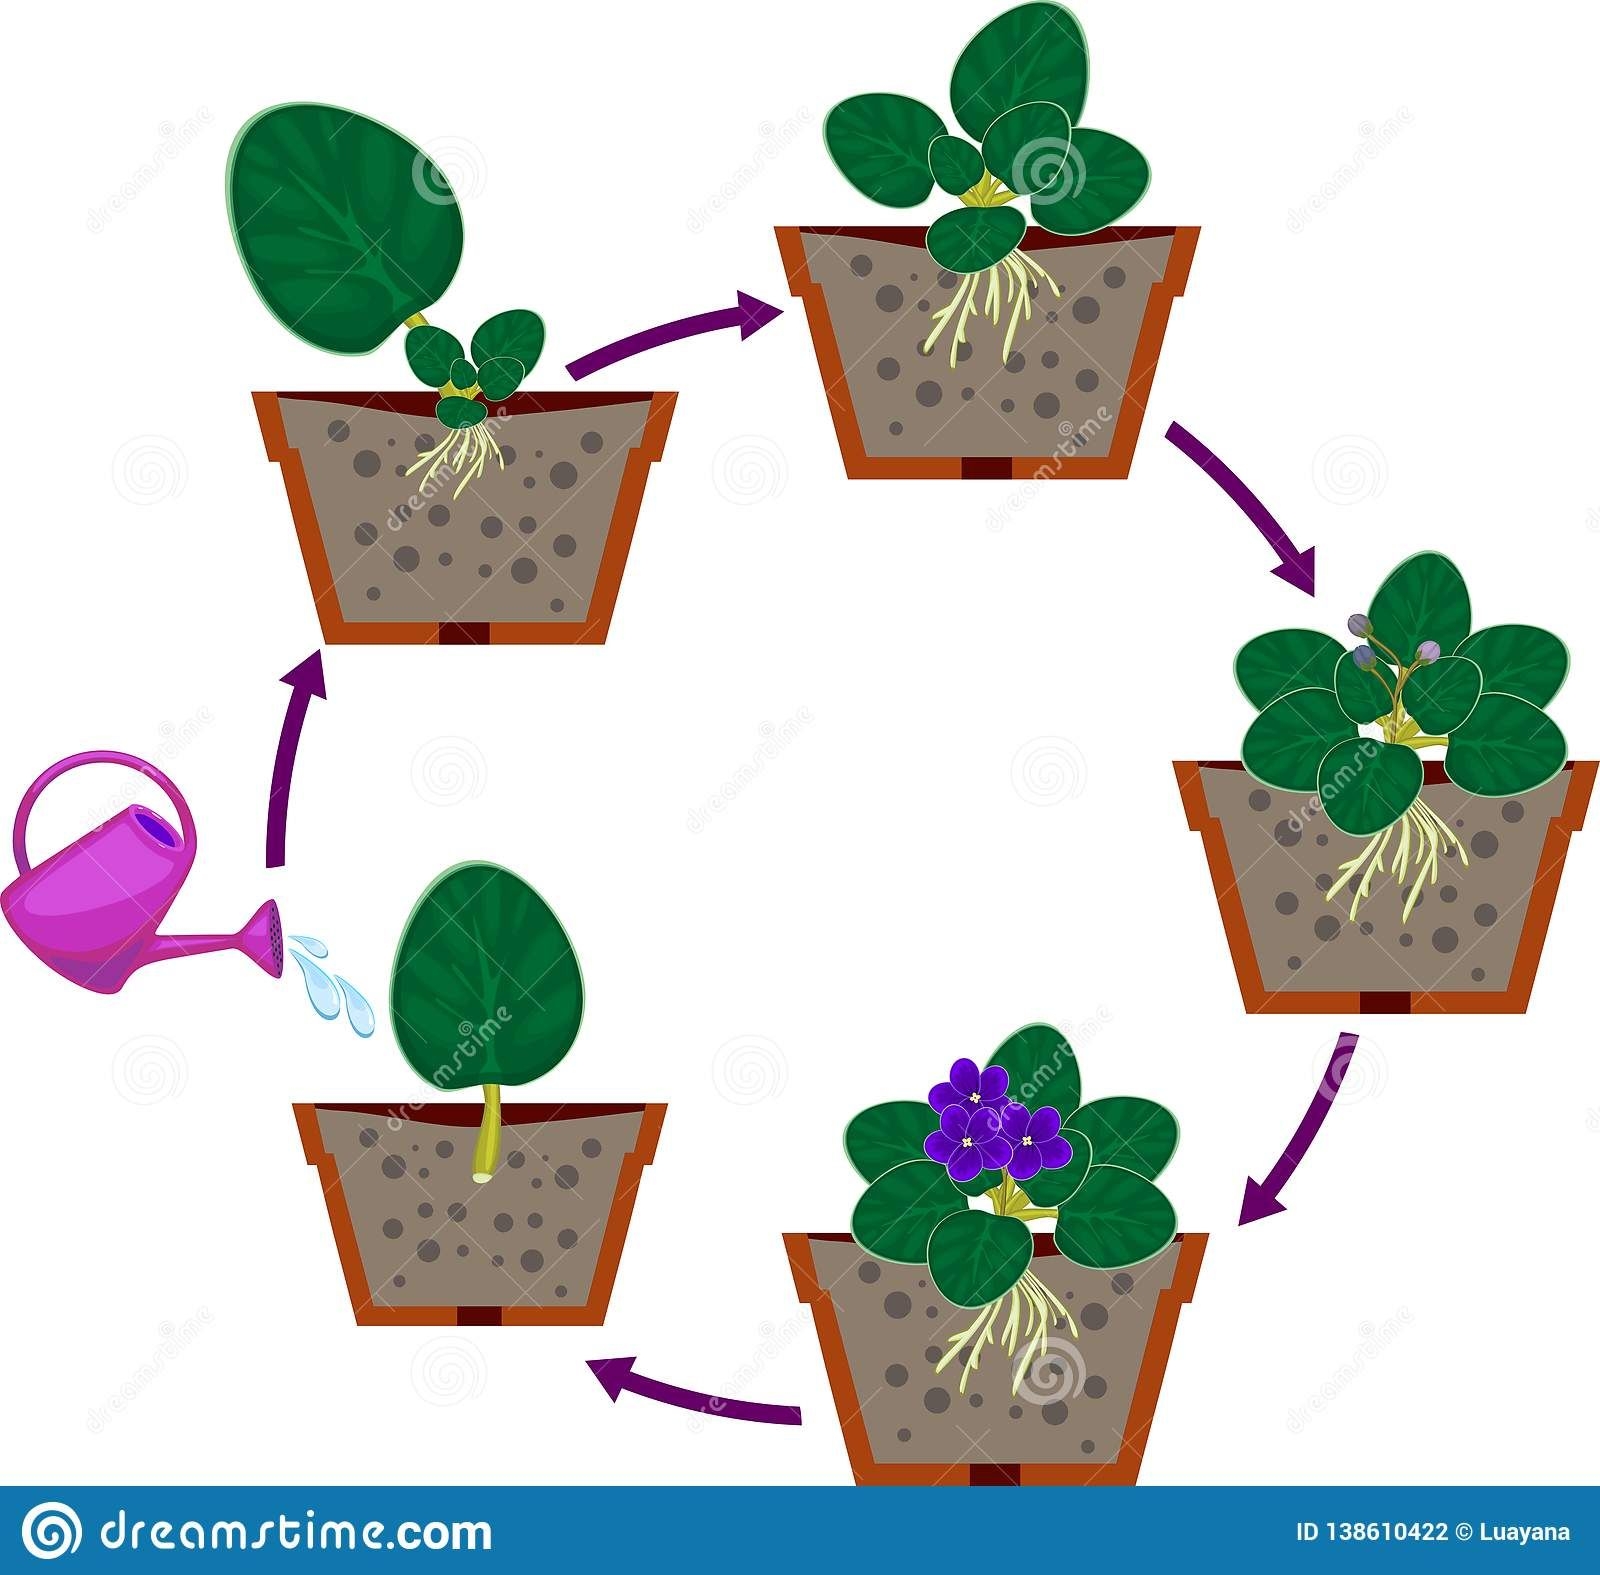 Установите последовательность этапов выращивания растения. Этапы роста цветка. Размножение комнатных растений детками. Фиалка комнатная для дошкольников. Схема роста комнатного растения для детей.